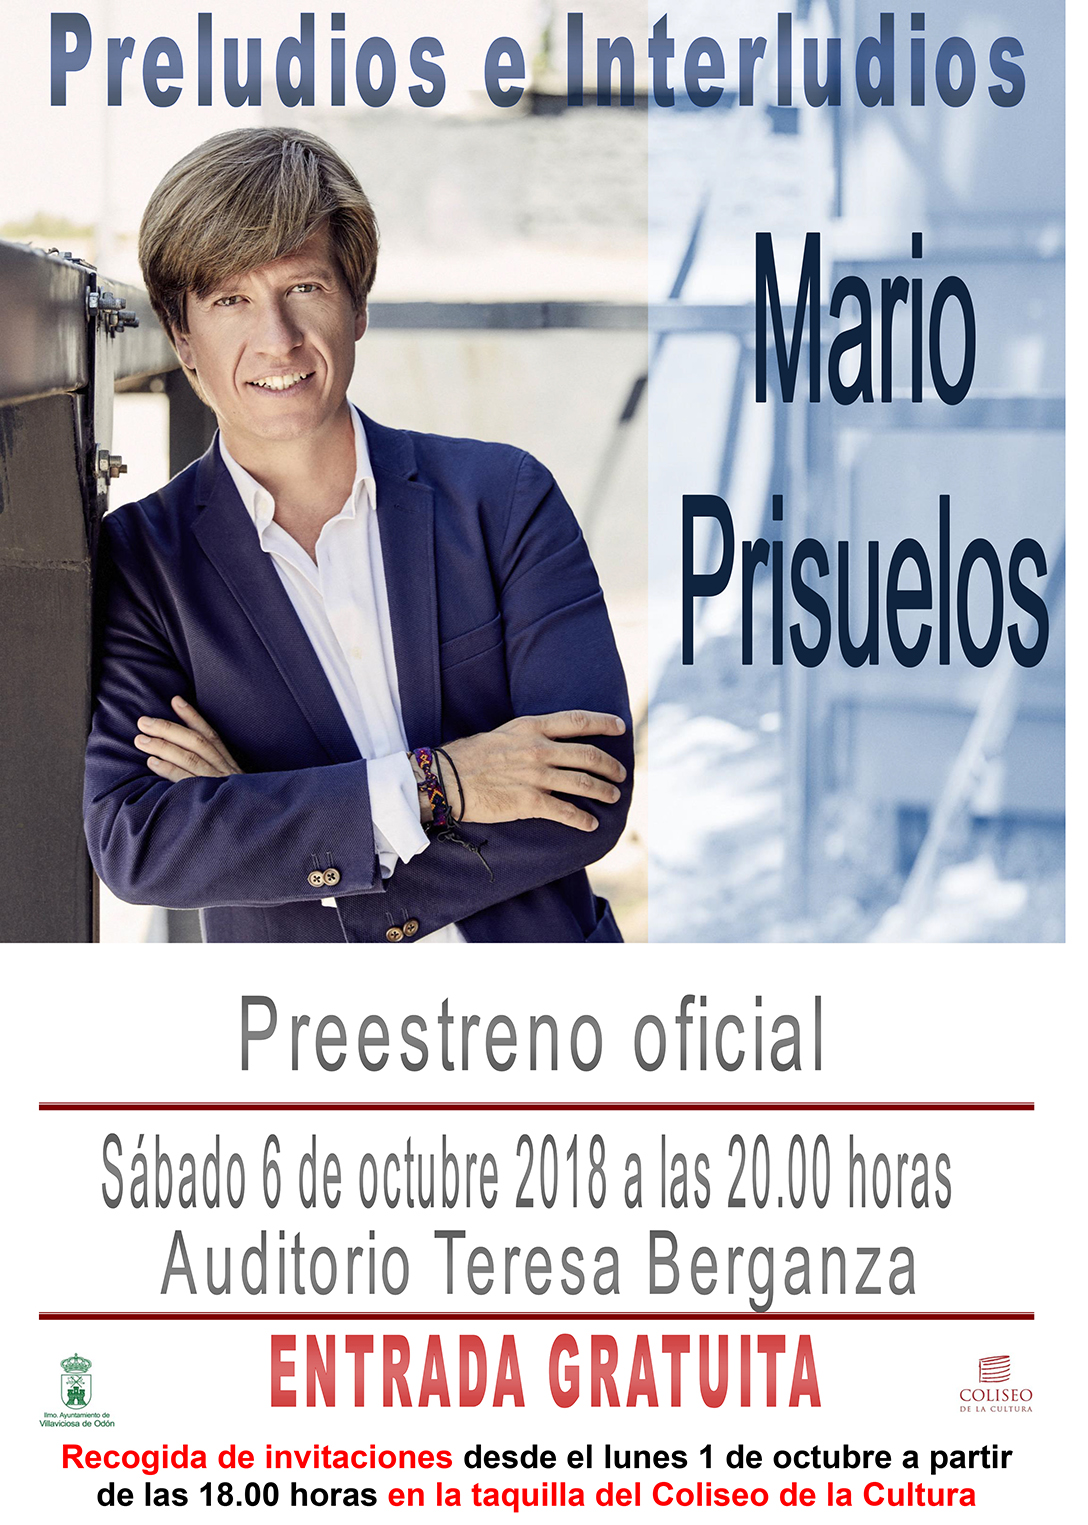 Mario Prisuelos preestrena en Villaviciosa "Preludios e Interludios"